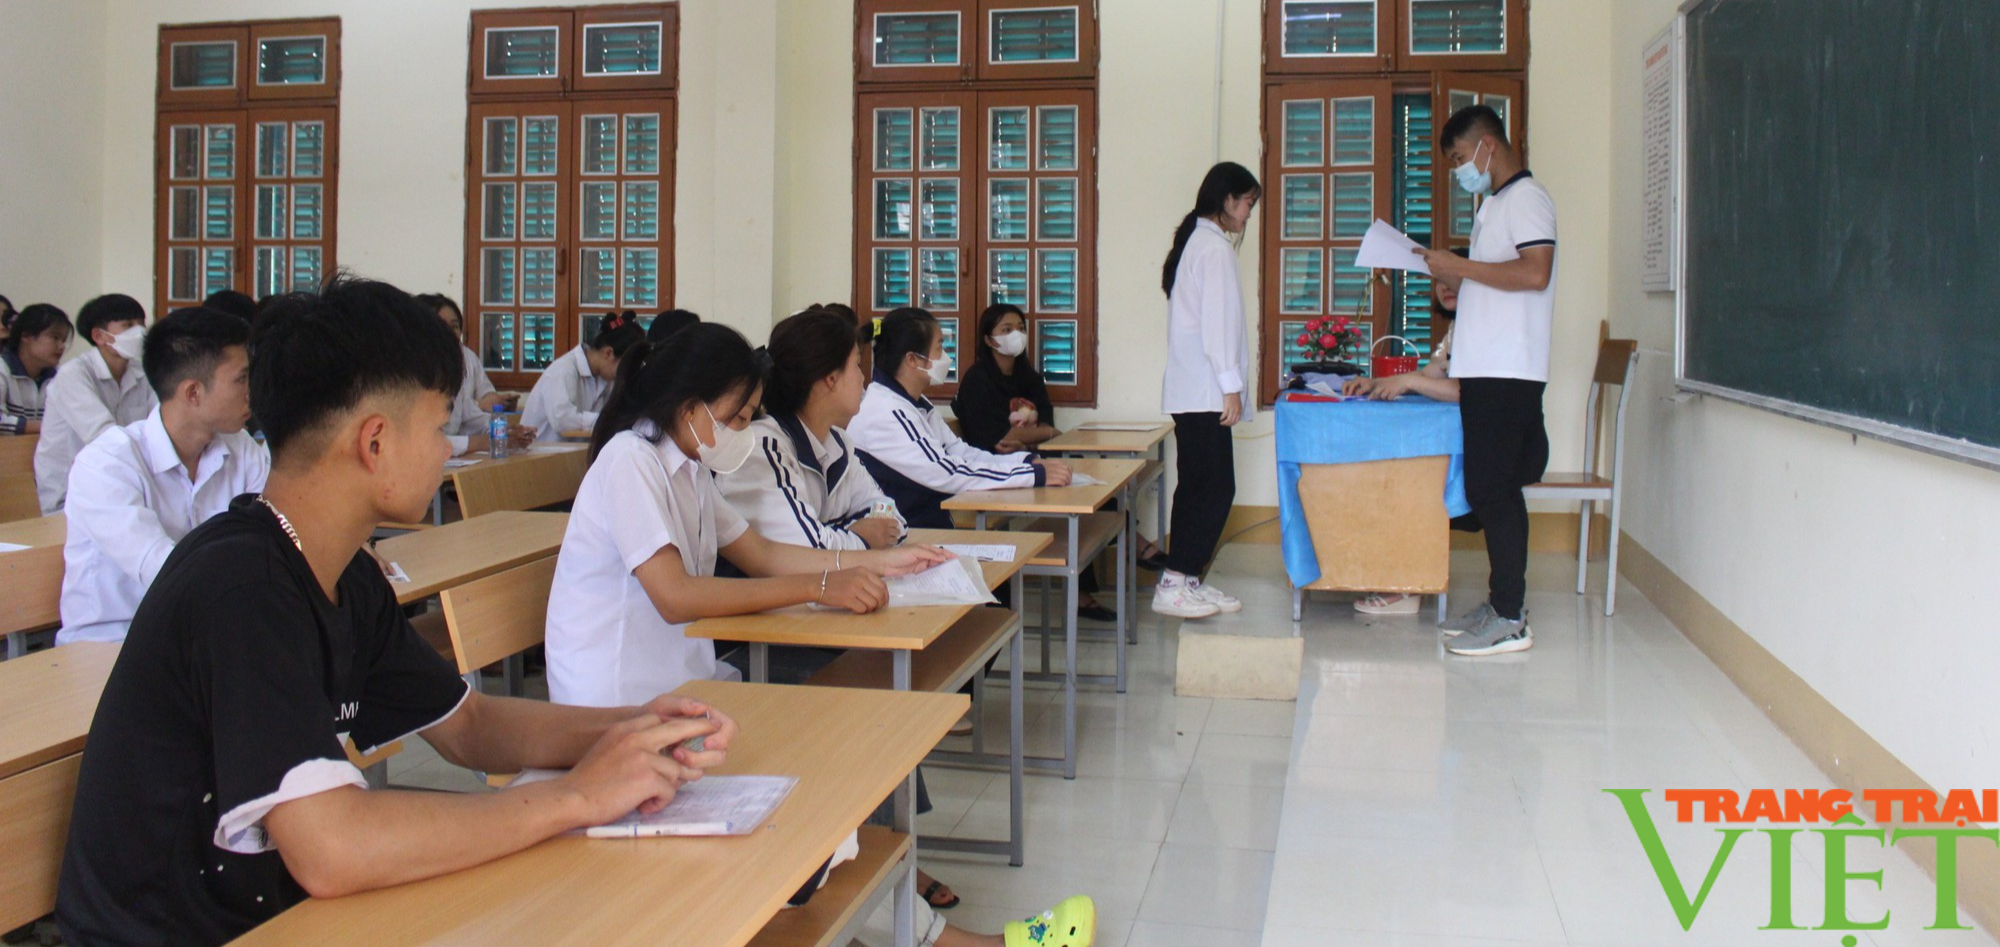 Dự báo thời tiết trong kỳ thi tốt nghiệp THPT năm 2023 tại tỉnh Sơn La - Ảnh 1.